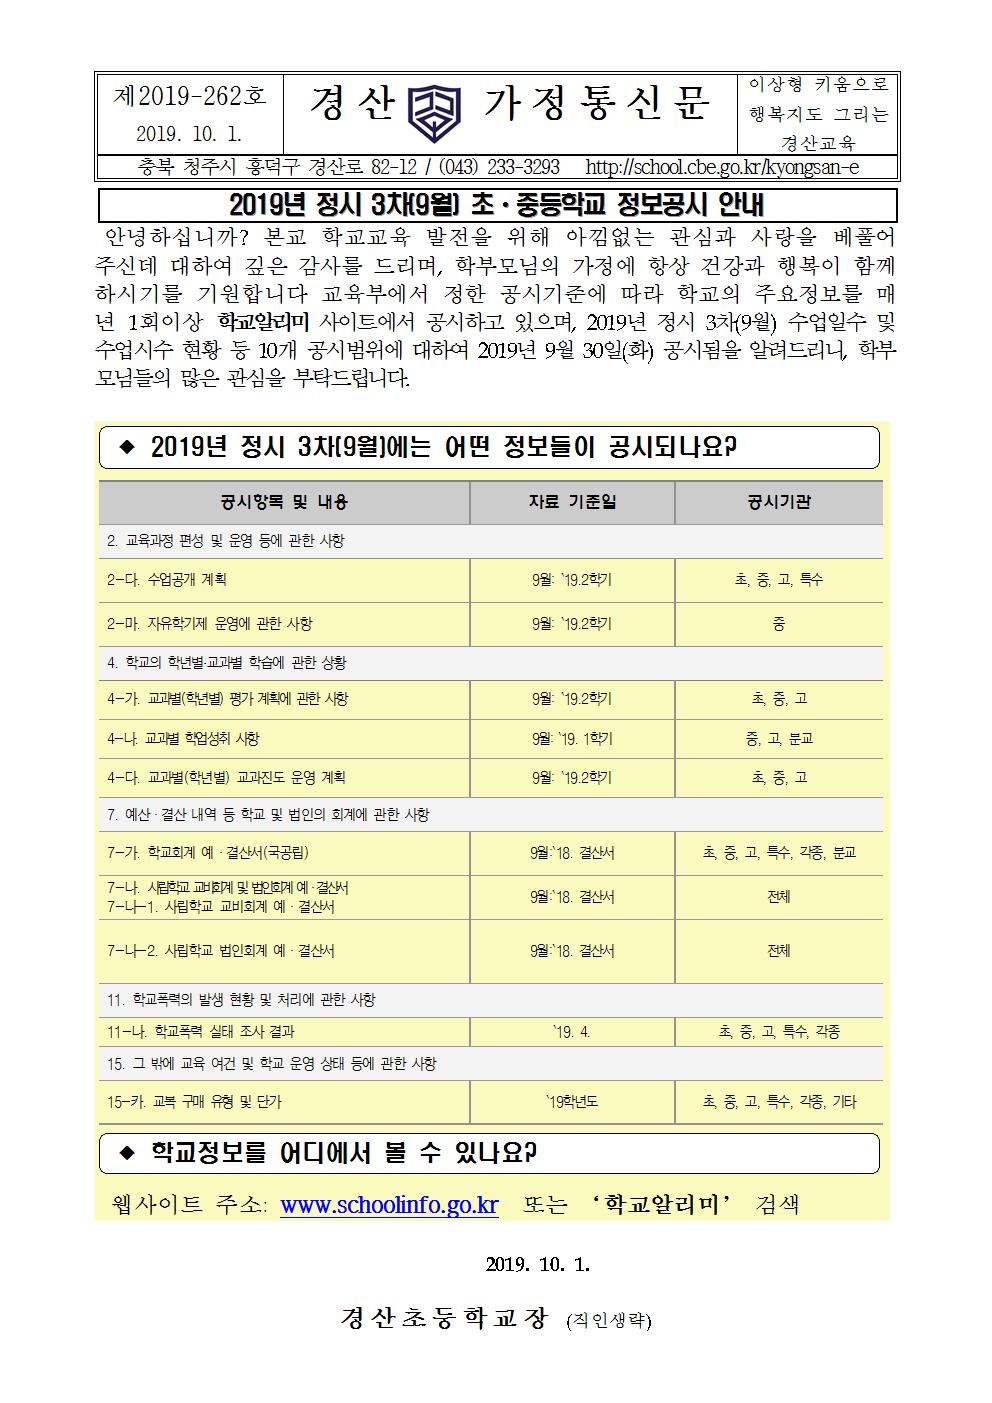 2019년 정시 3차(9월) 초ㆍ중등학교 정보공시 안내장001